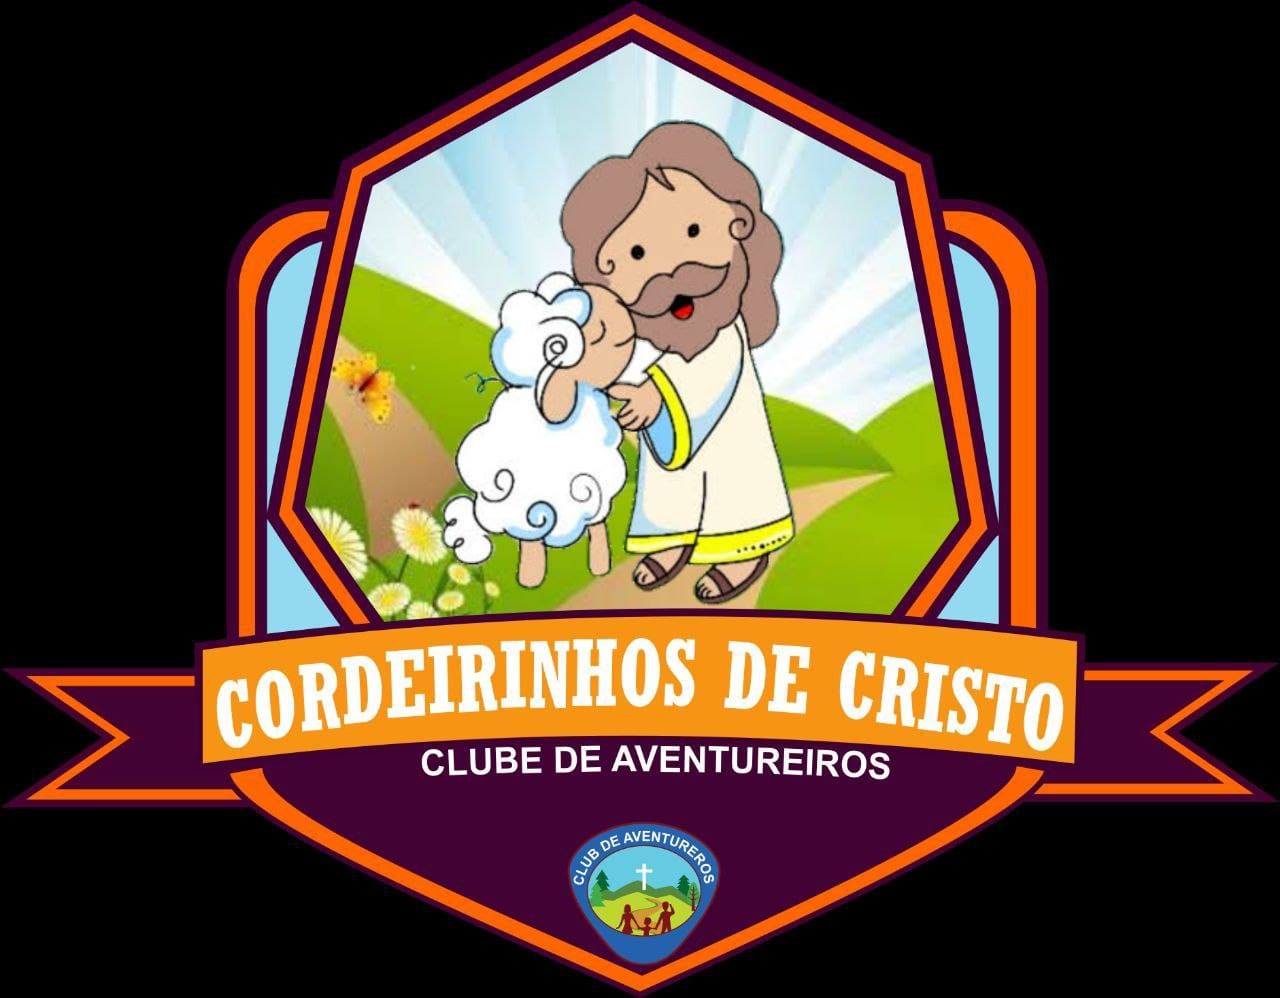 CORDEIRINHOS DE CRISTO